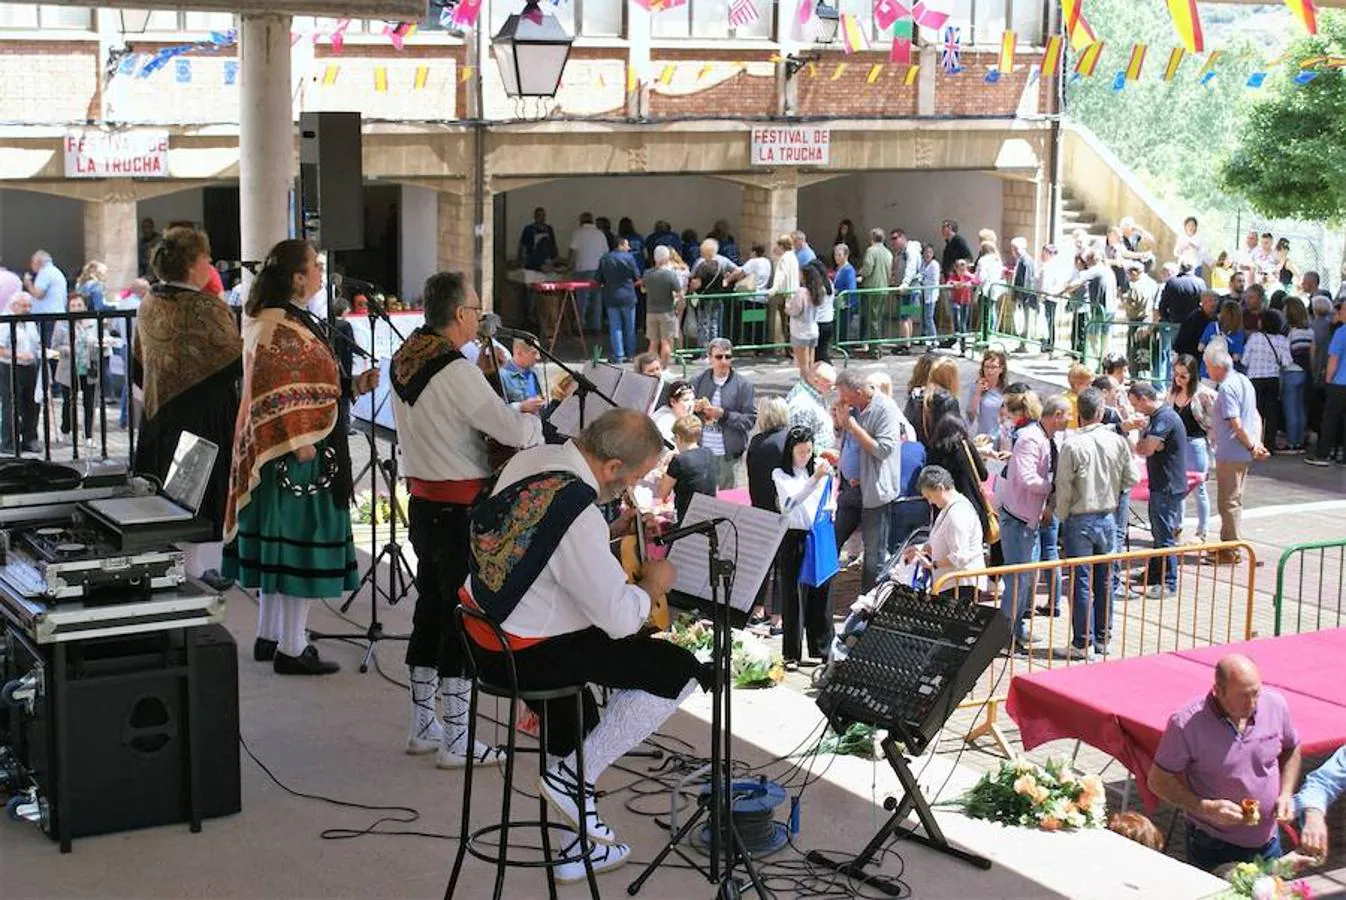 Éxito y consolidación del festival de la trucha de Bobadilla, una localidad volcada con la riqueza piscícola del Najerilla. 